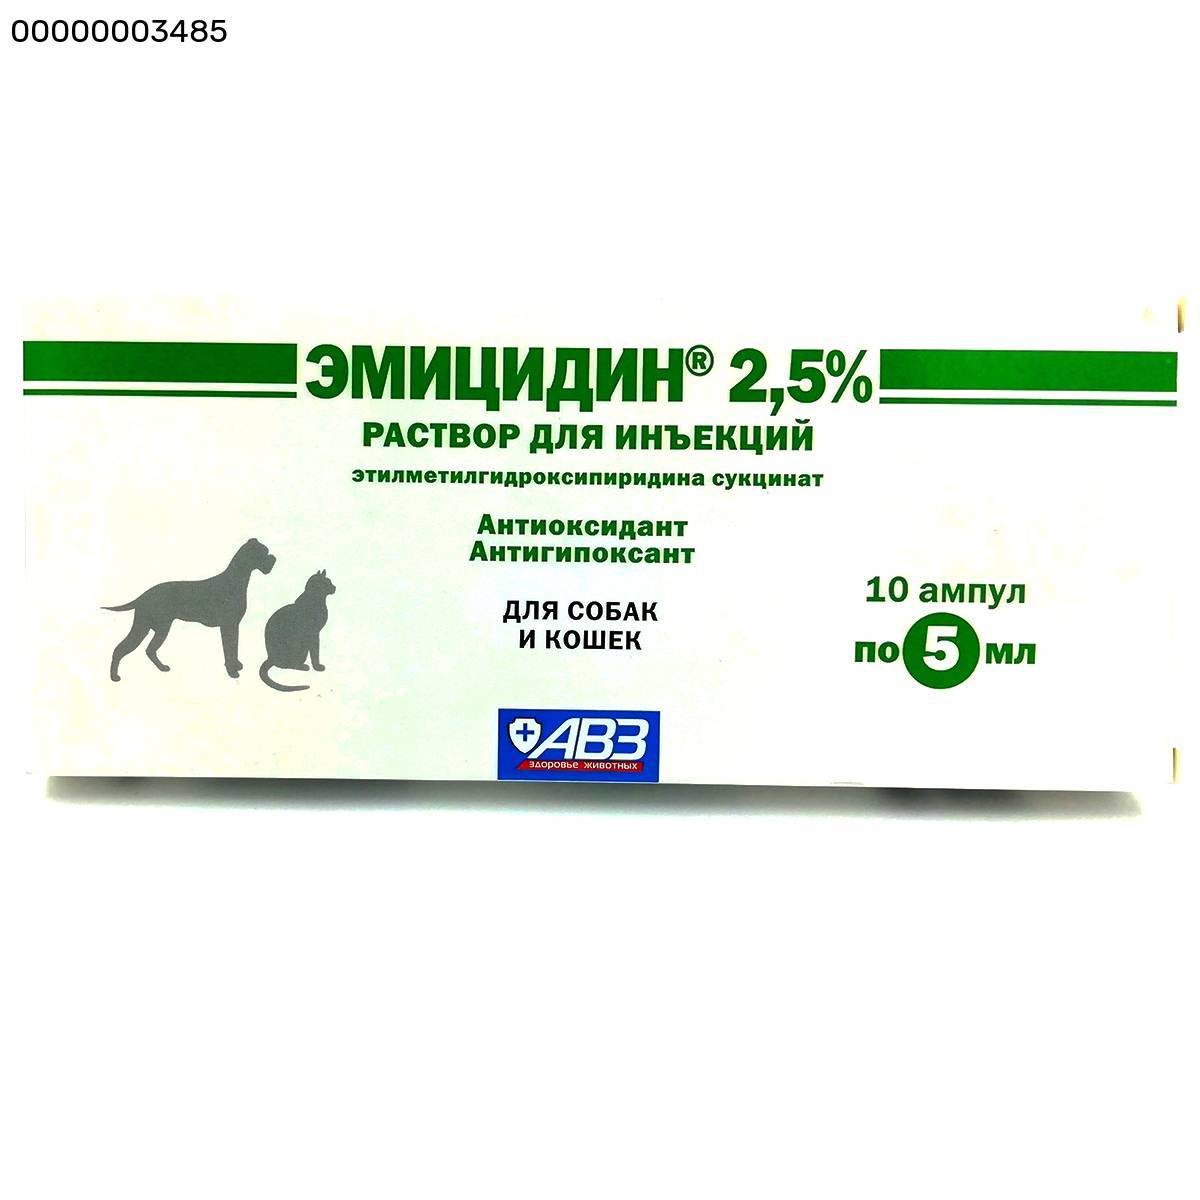 Эмицидин — ветеринарный препарат для лечения гипоксии